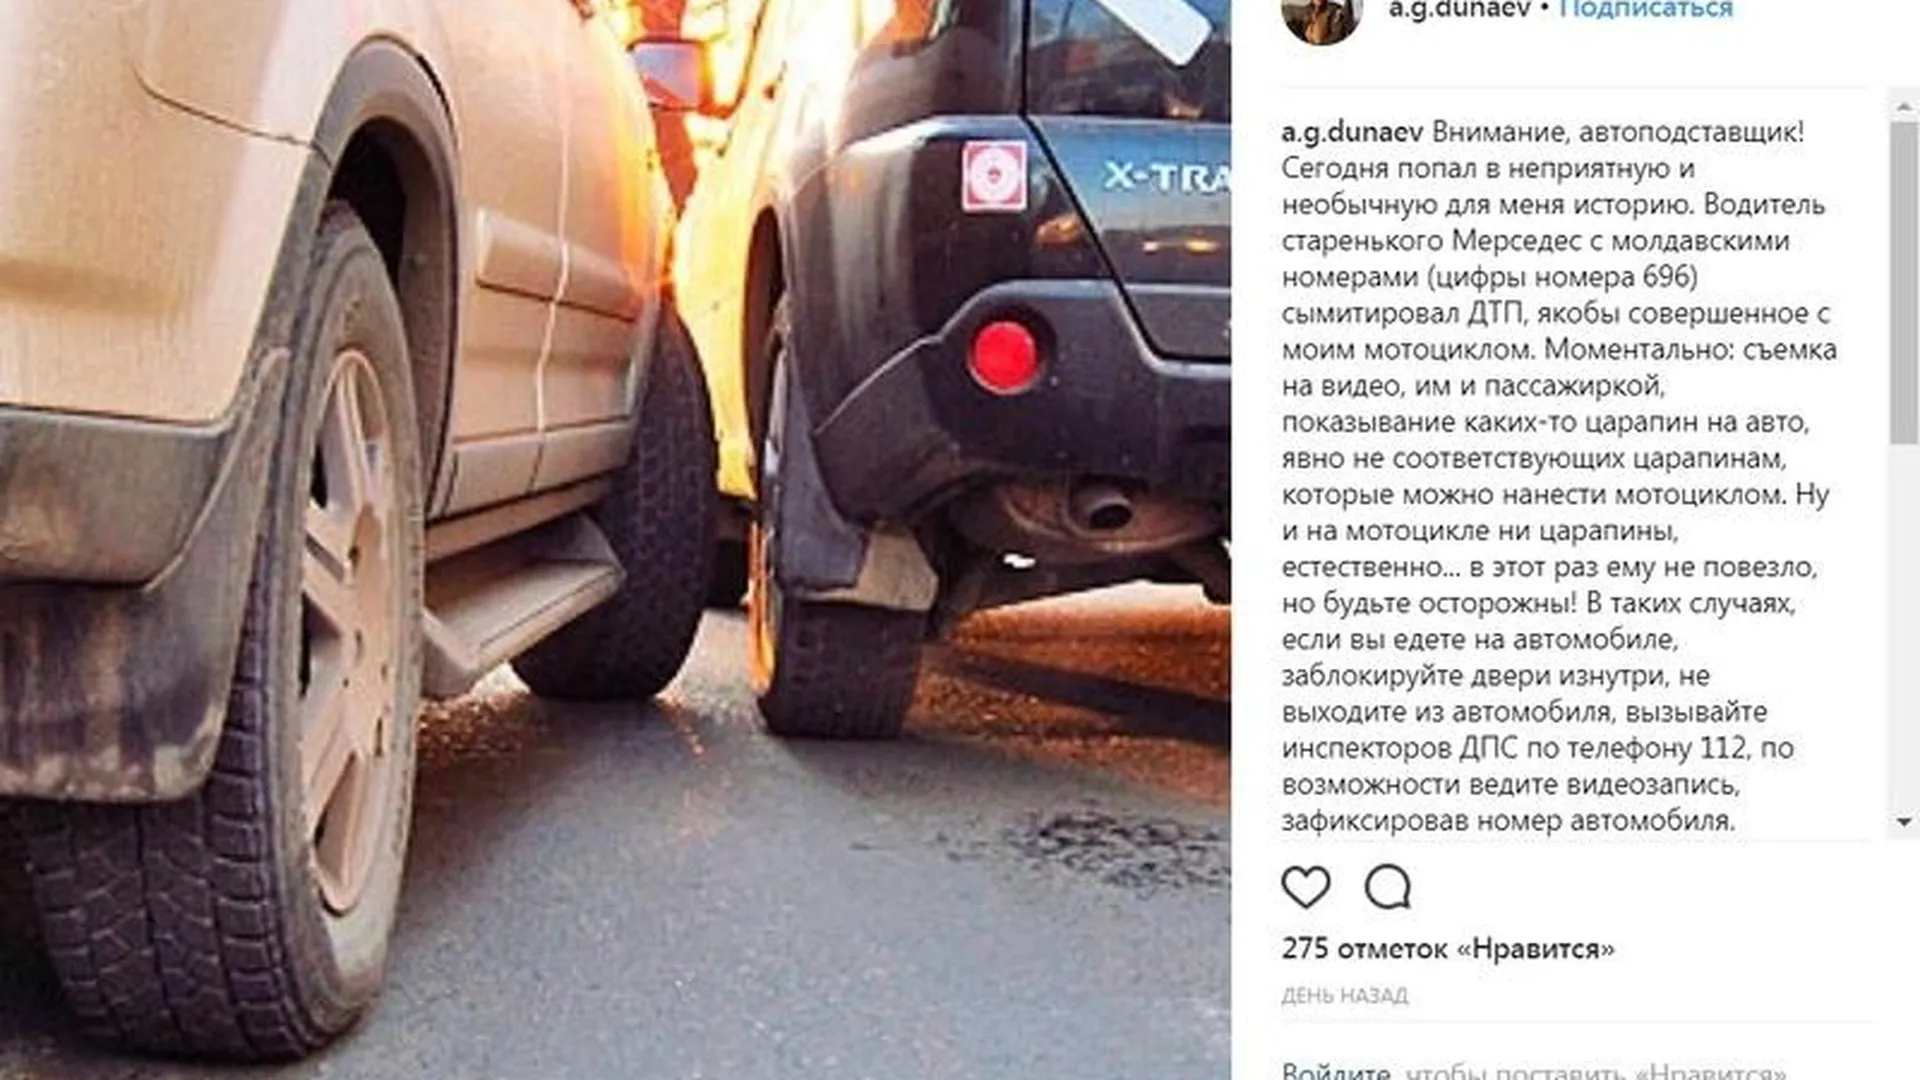 Глава Истры Андрей Дунаев попал в автоподставу